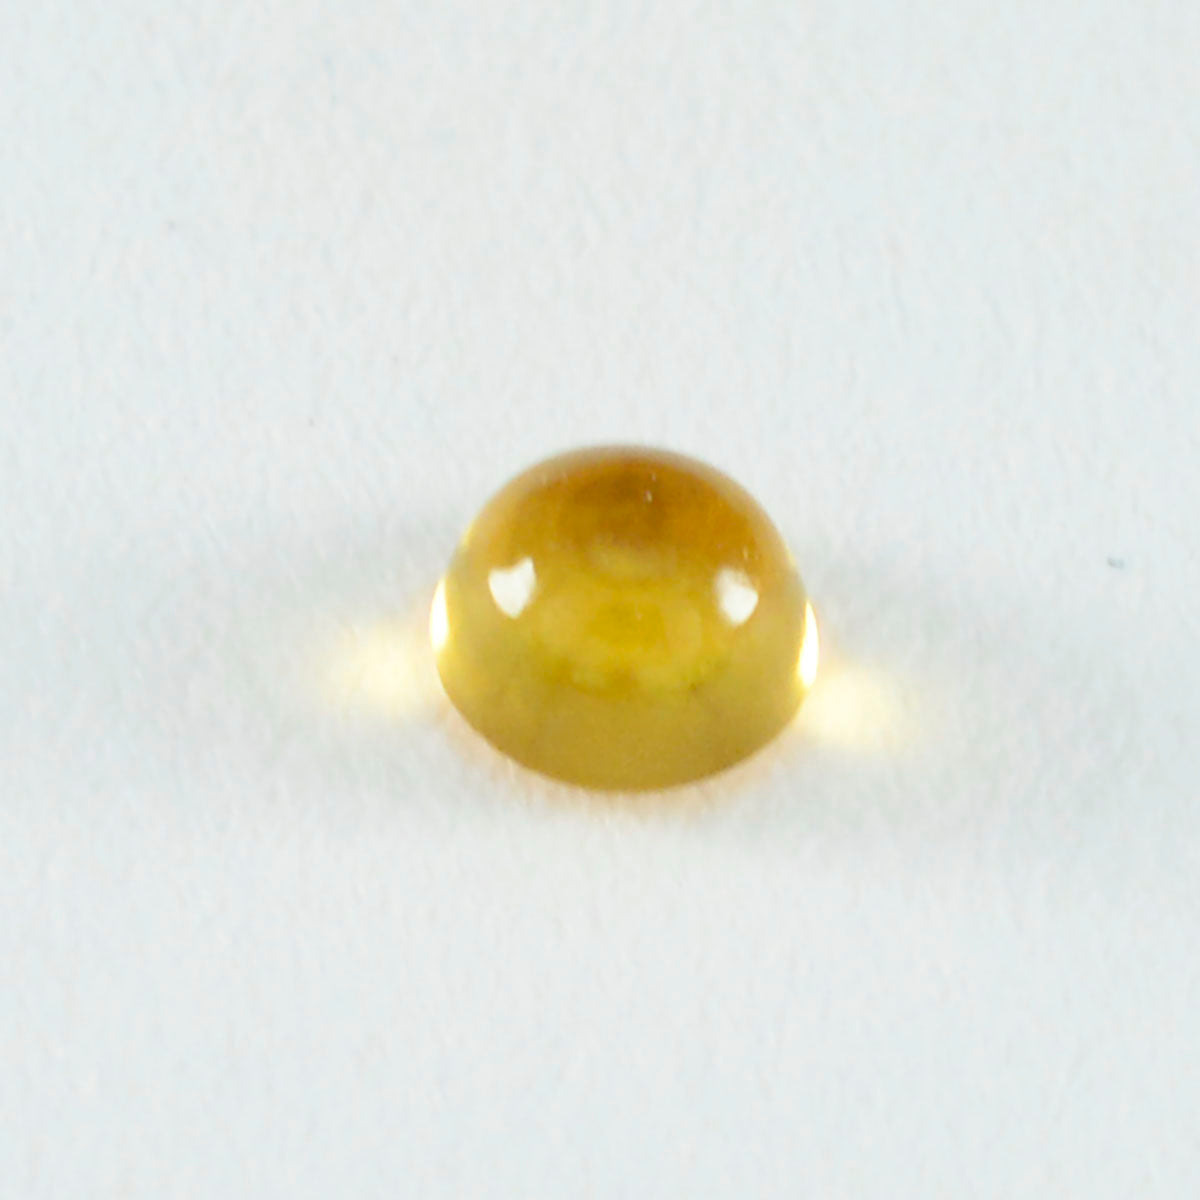 Riyogems 1 cabujón de citrino amarillo de 0.433 x 0.433 in, forma redonda, calidad de belleza, piedra preciosa suelta